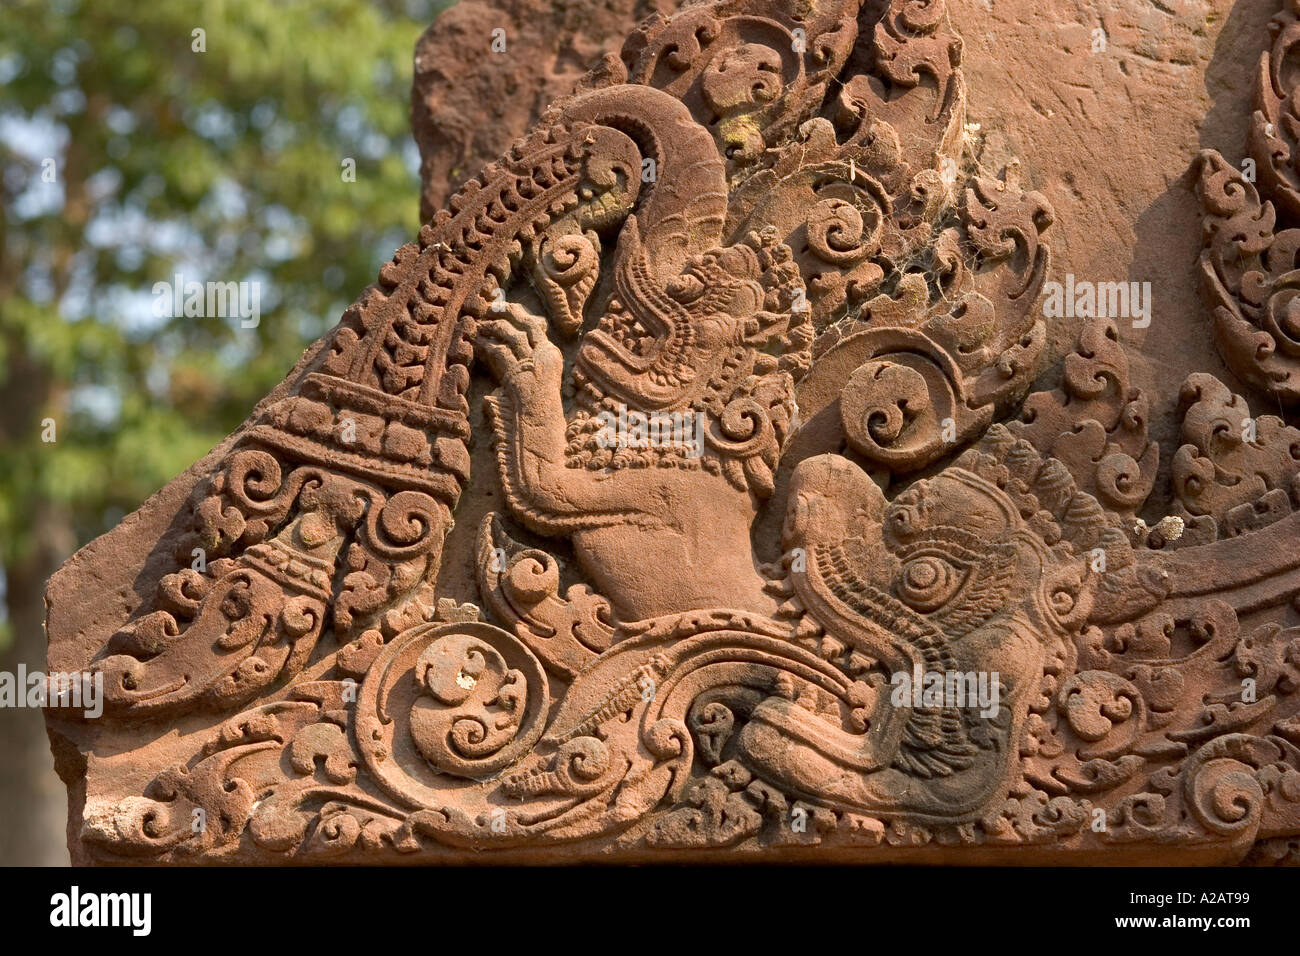 Cambodge Siem Reap Angkor Temples Banteay Srei Temple Hindou Détail de sculpture sur toran autour des entrées Banque D'Images